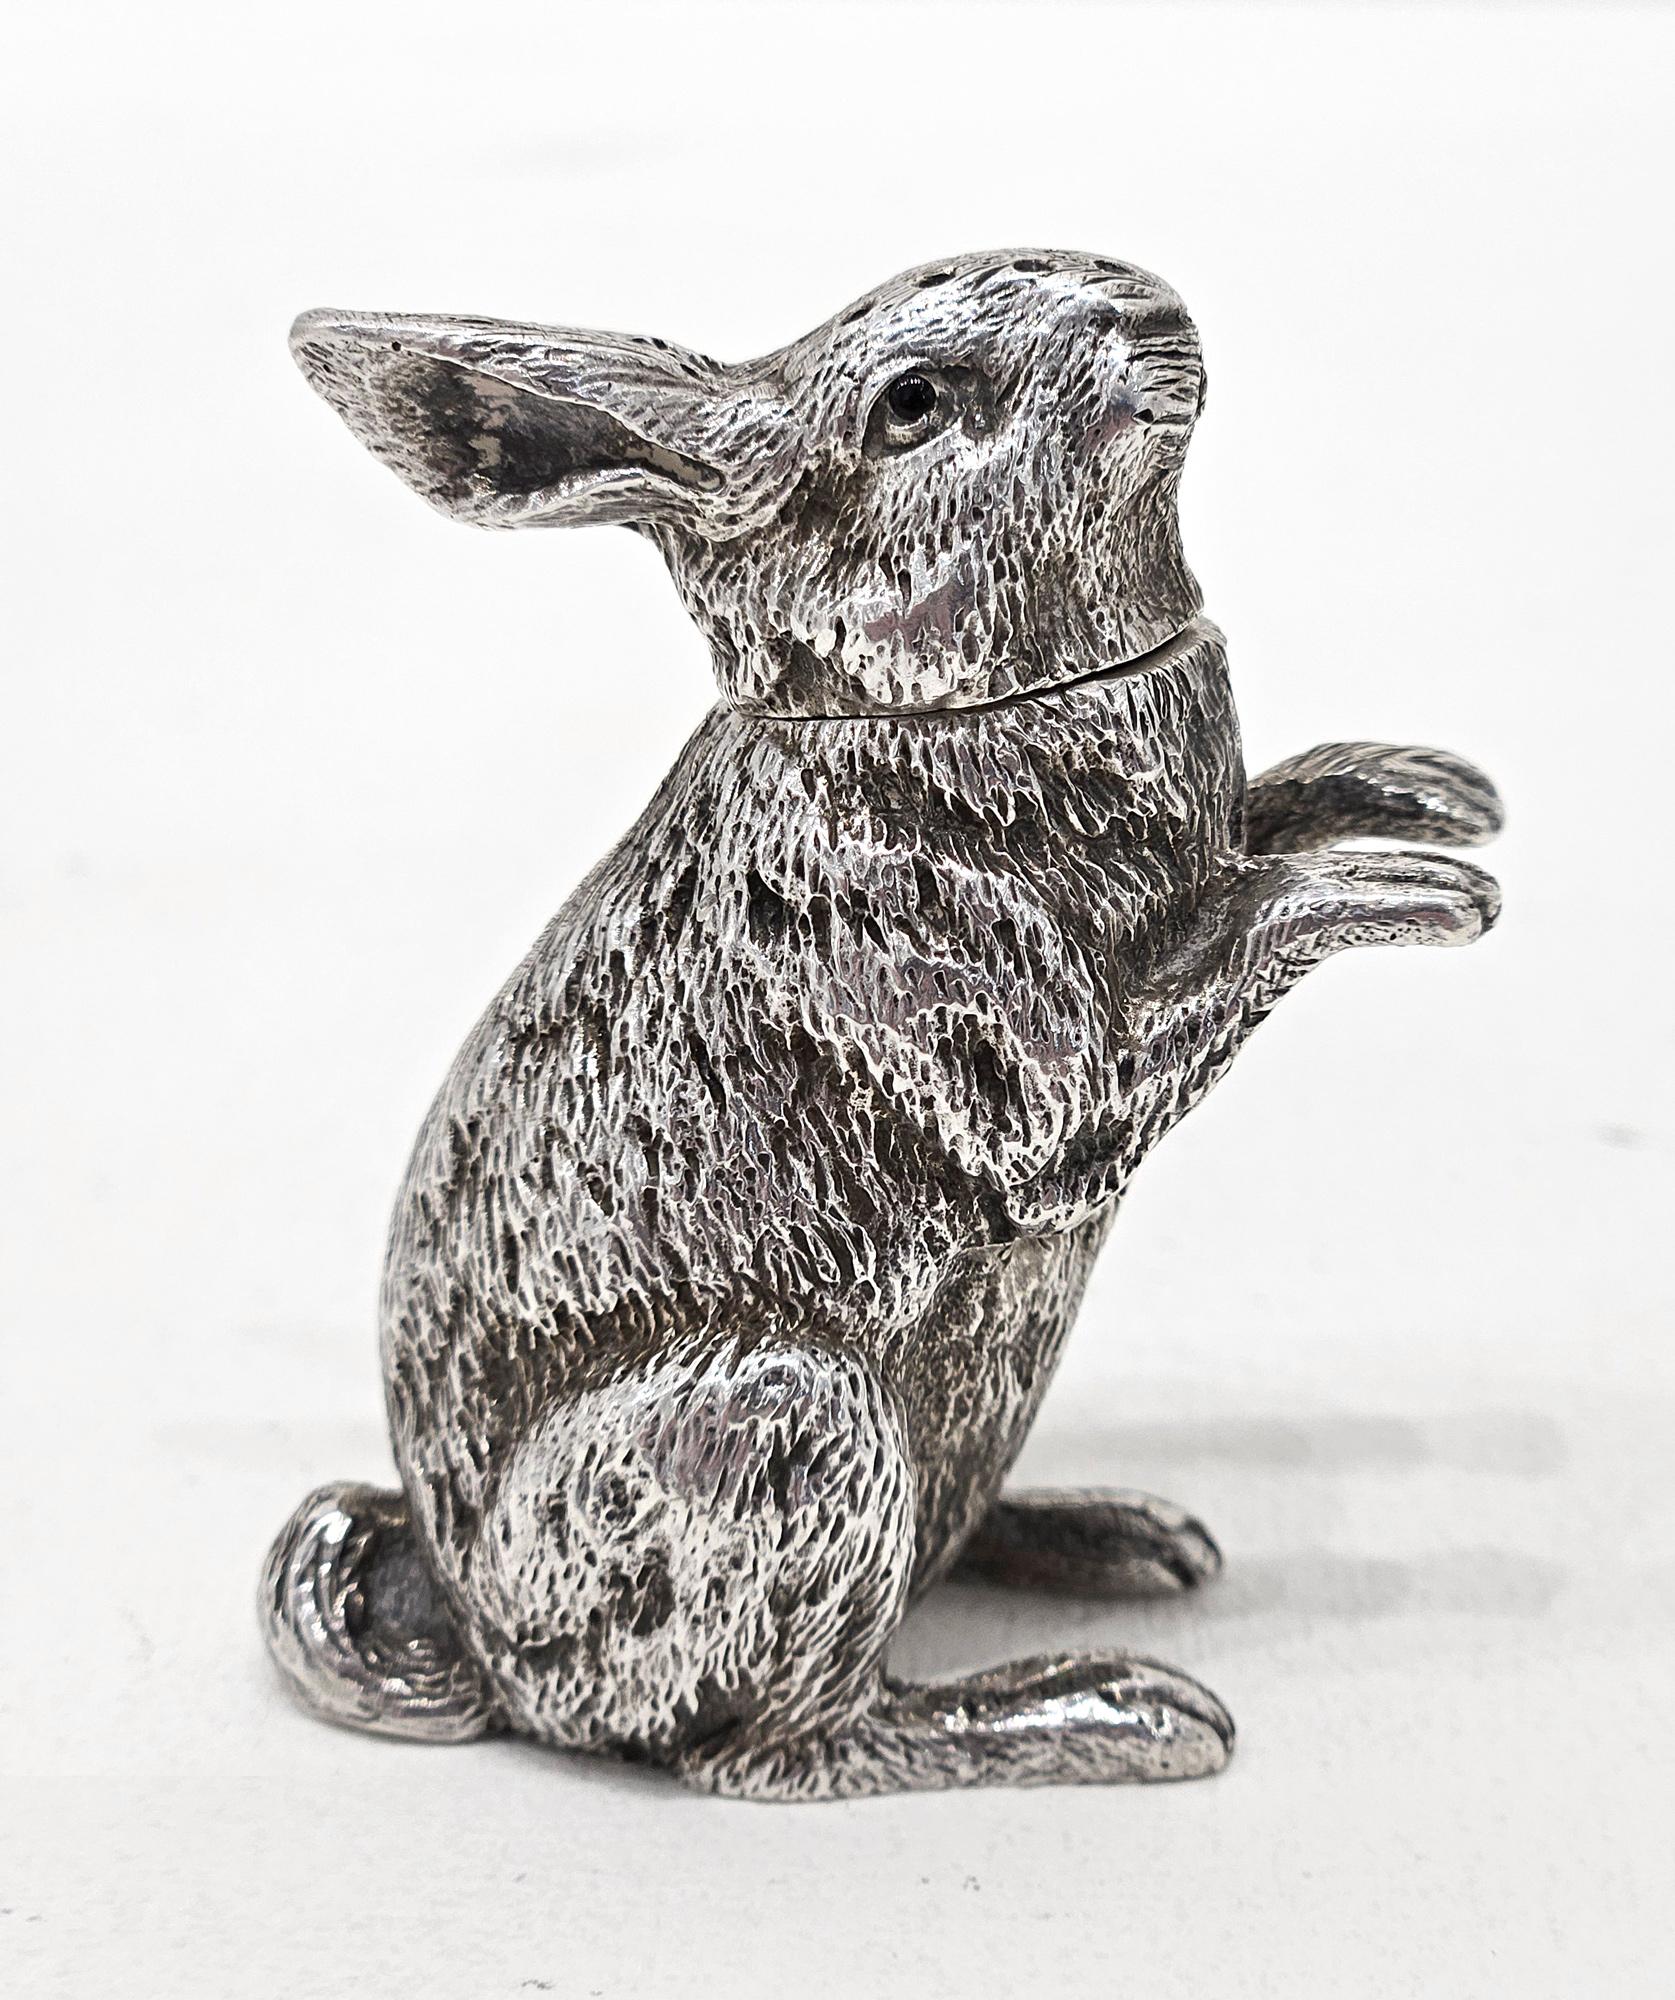 Pepperette en argent sterling de la fin de l'époque victorienne, en forme de lapin ou de lièvre, fabriquée par Sampsons & Co de Londres en 1899. 

Il est très finement modélisé comme un lapin assis sur ses pattes, avec une tête amovible à remplir de